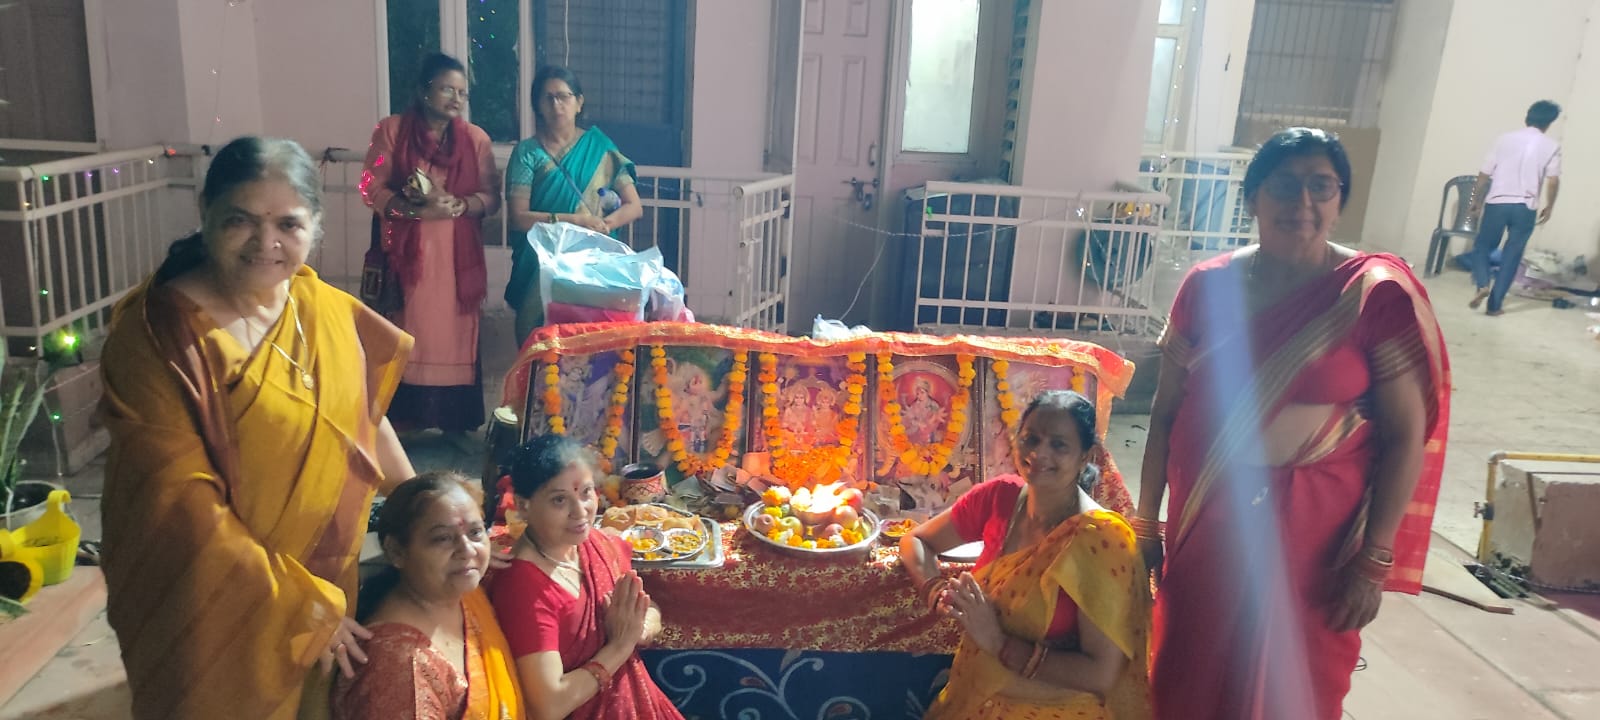 Sundarkand Path In Noida: सोसाइटी में शांति के लिए सुंदरकांड-भंडारे का आयोजन, राधे-राधे कीर्तन मंडली की अनोखी प्रस्तुती